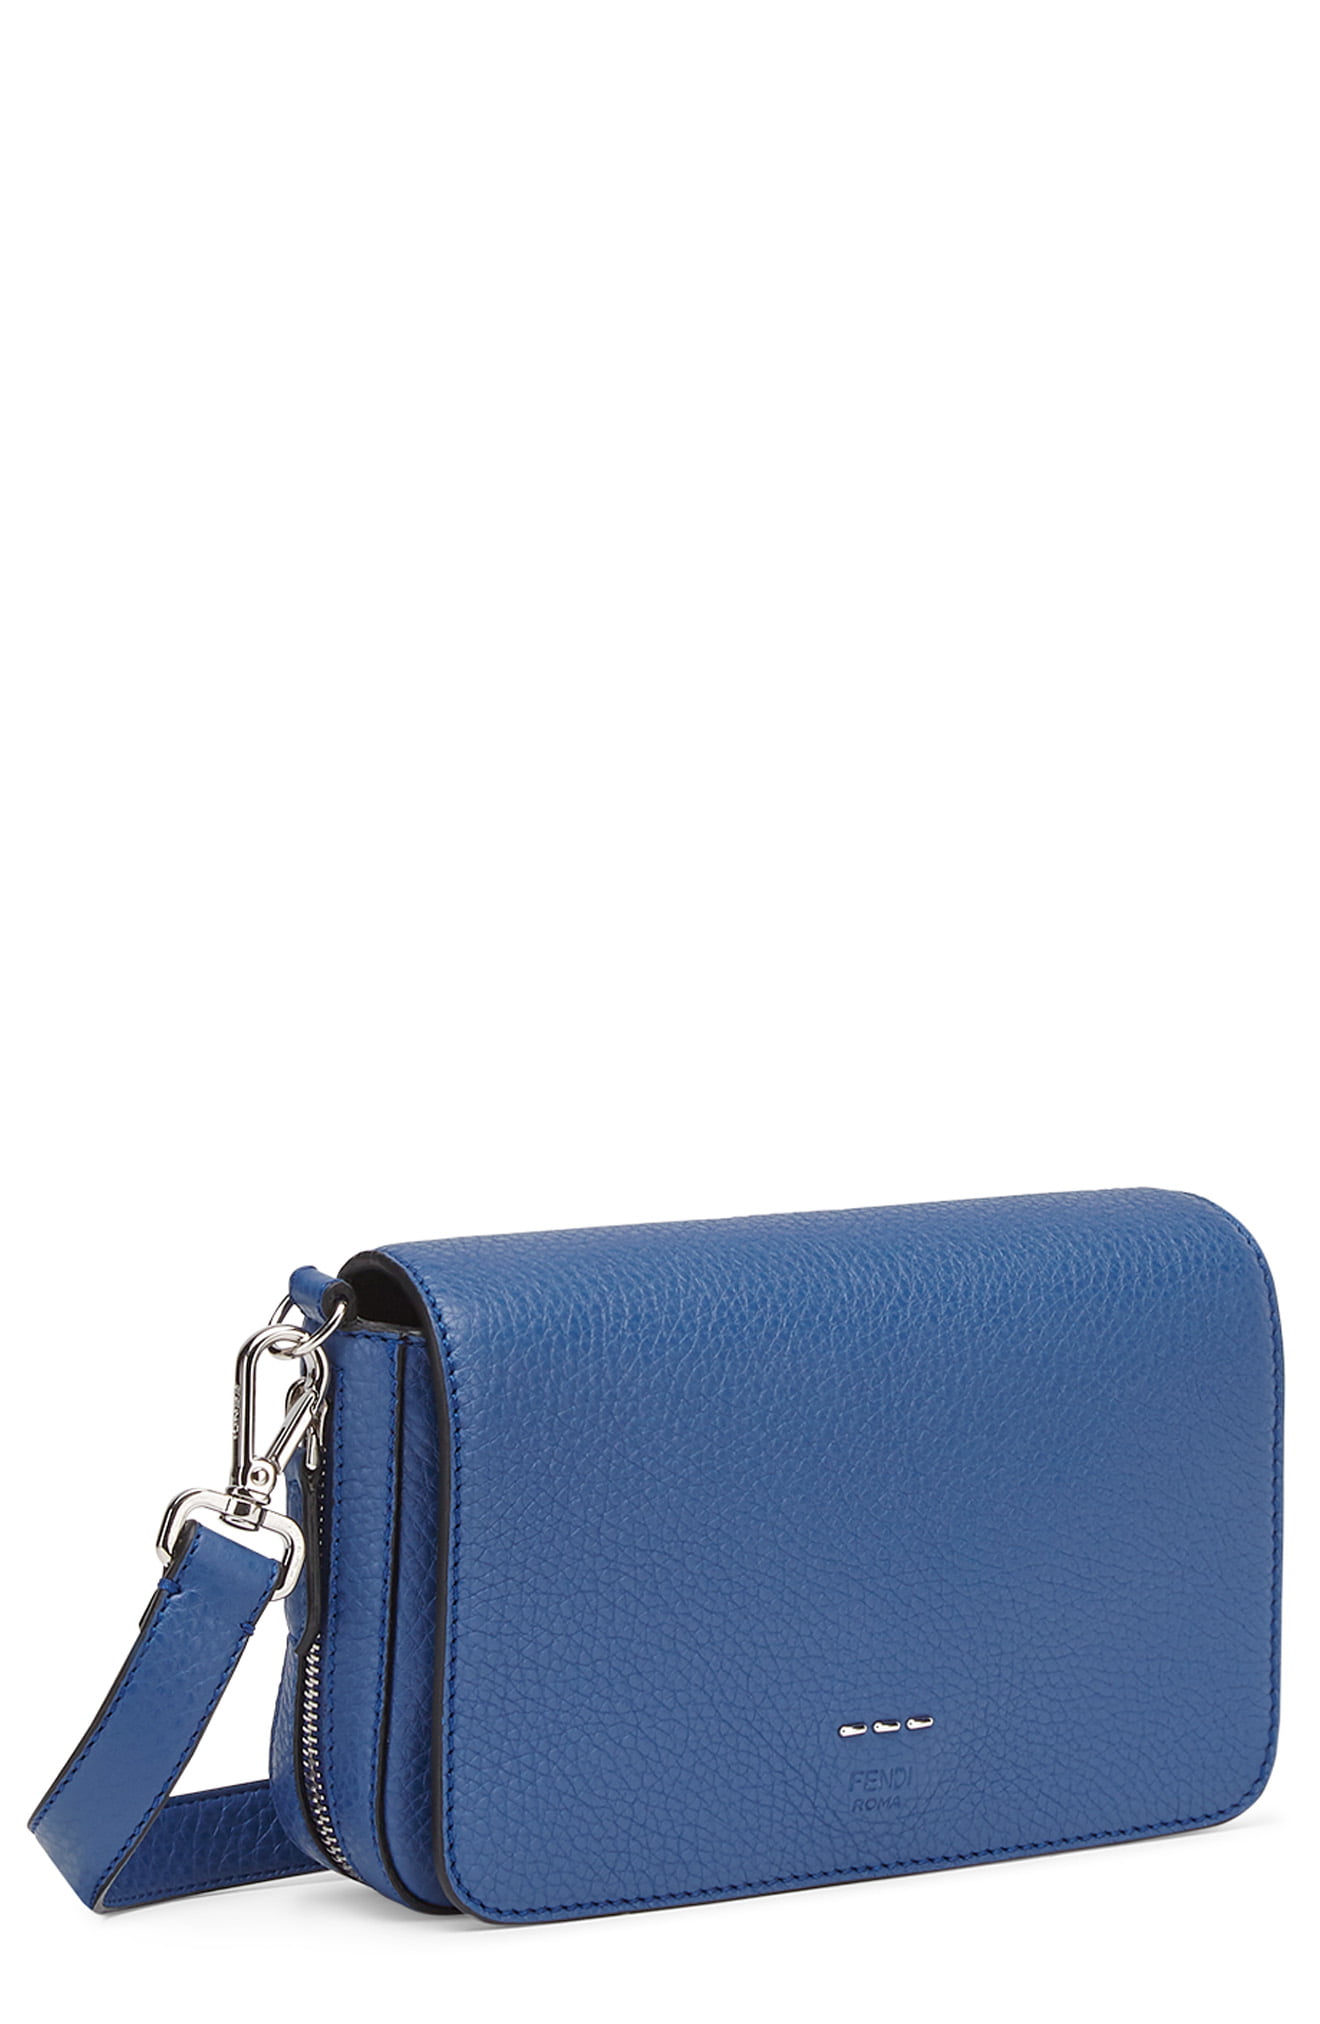 Fendi Mini Leather Messenger Bag - Blue 